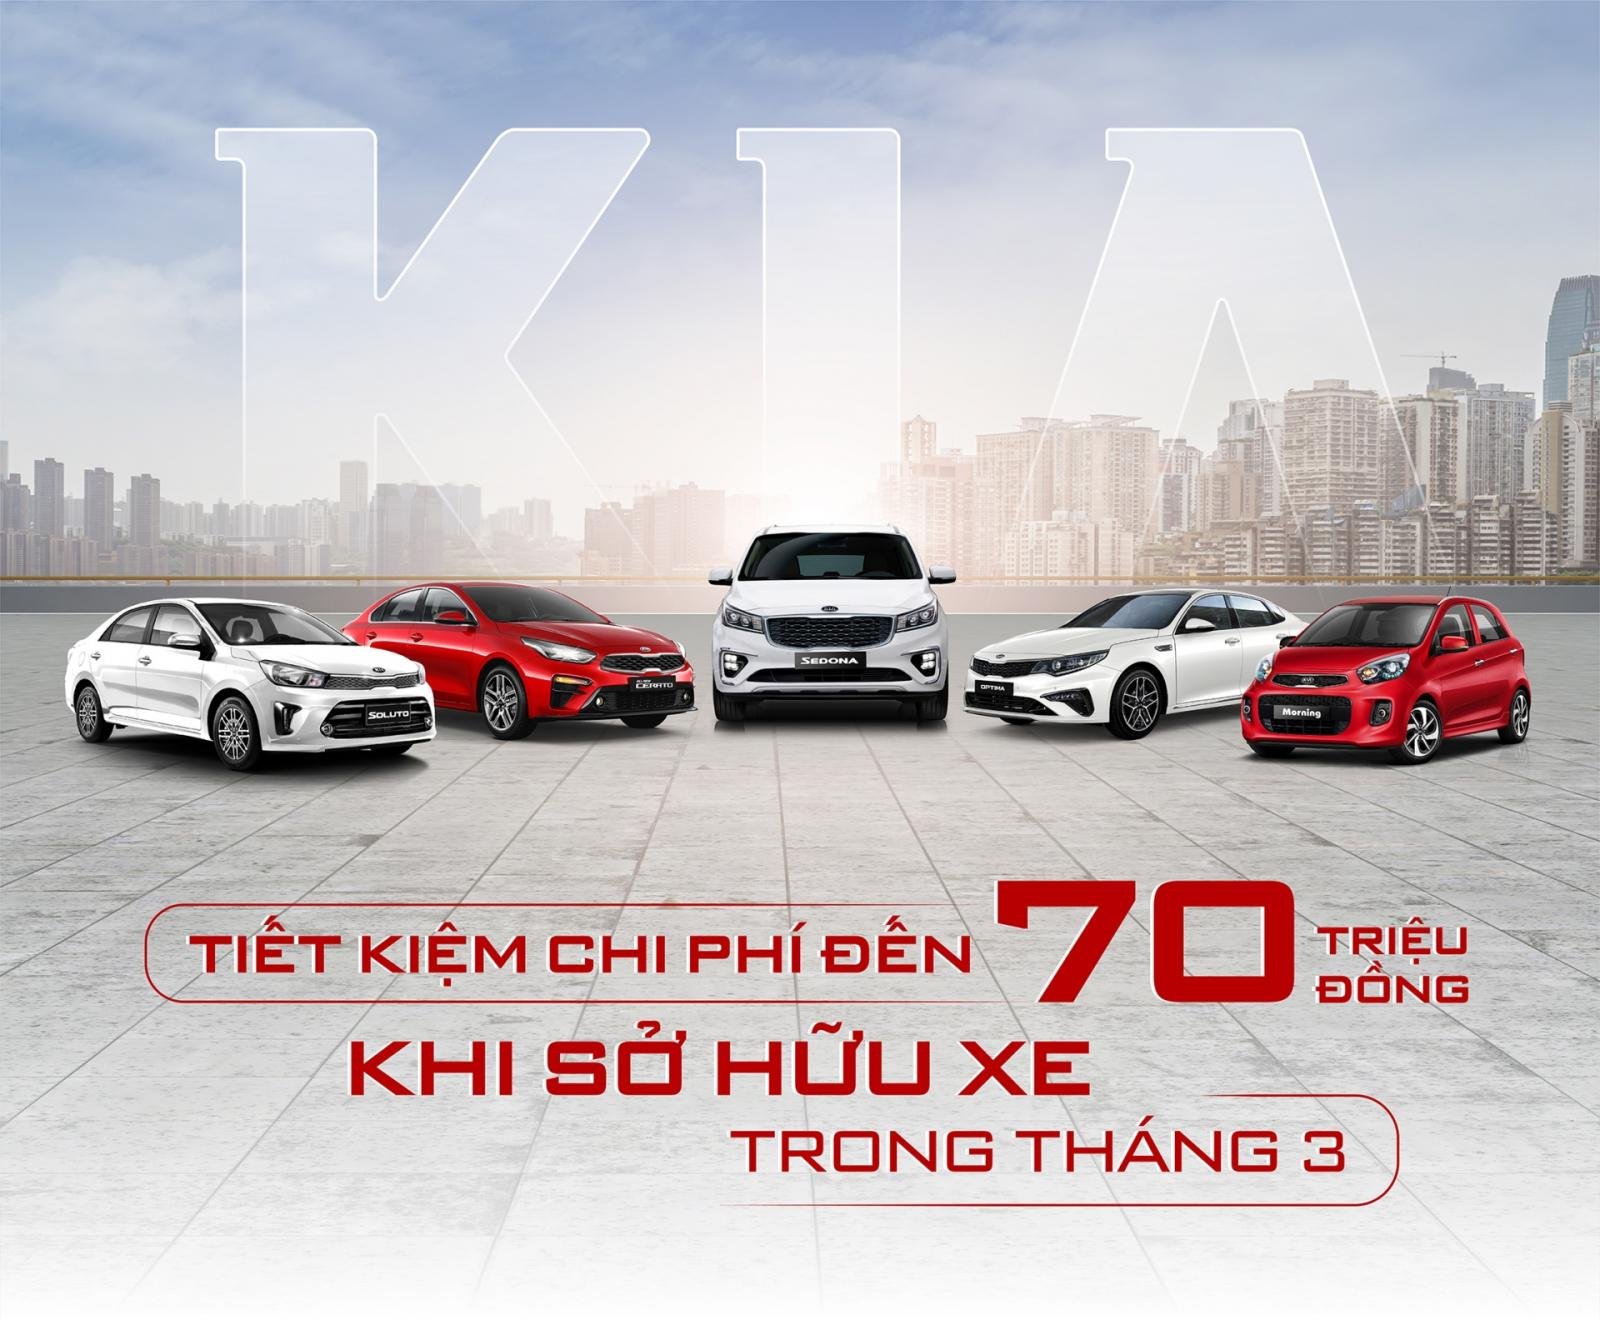 Thaco ưu đãi giá xe Kia trong tháng 3/2020 lên đến 70 triệu đồngsdg